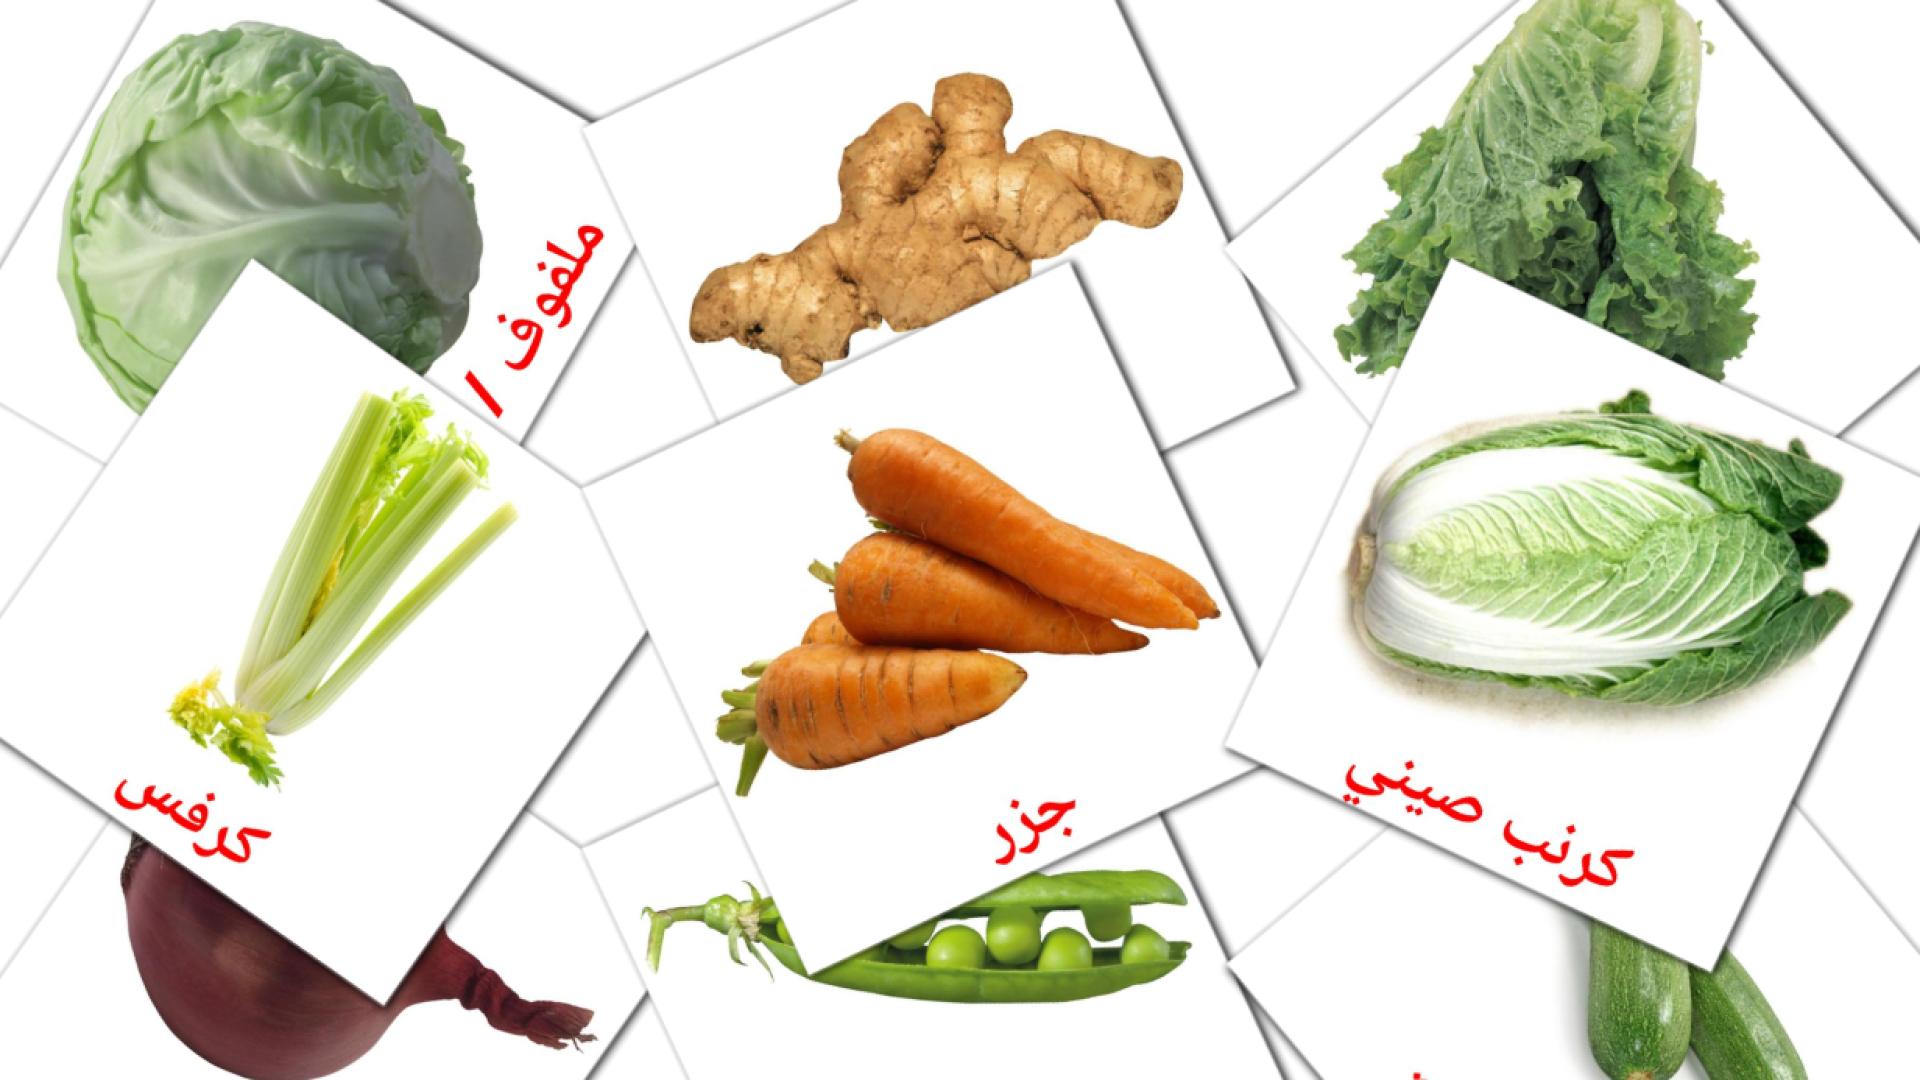 Gemüse - Arabisch Vokabelkarten